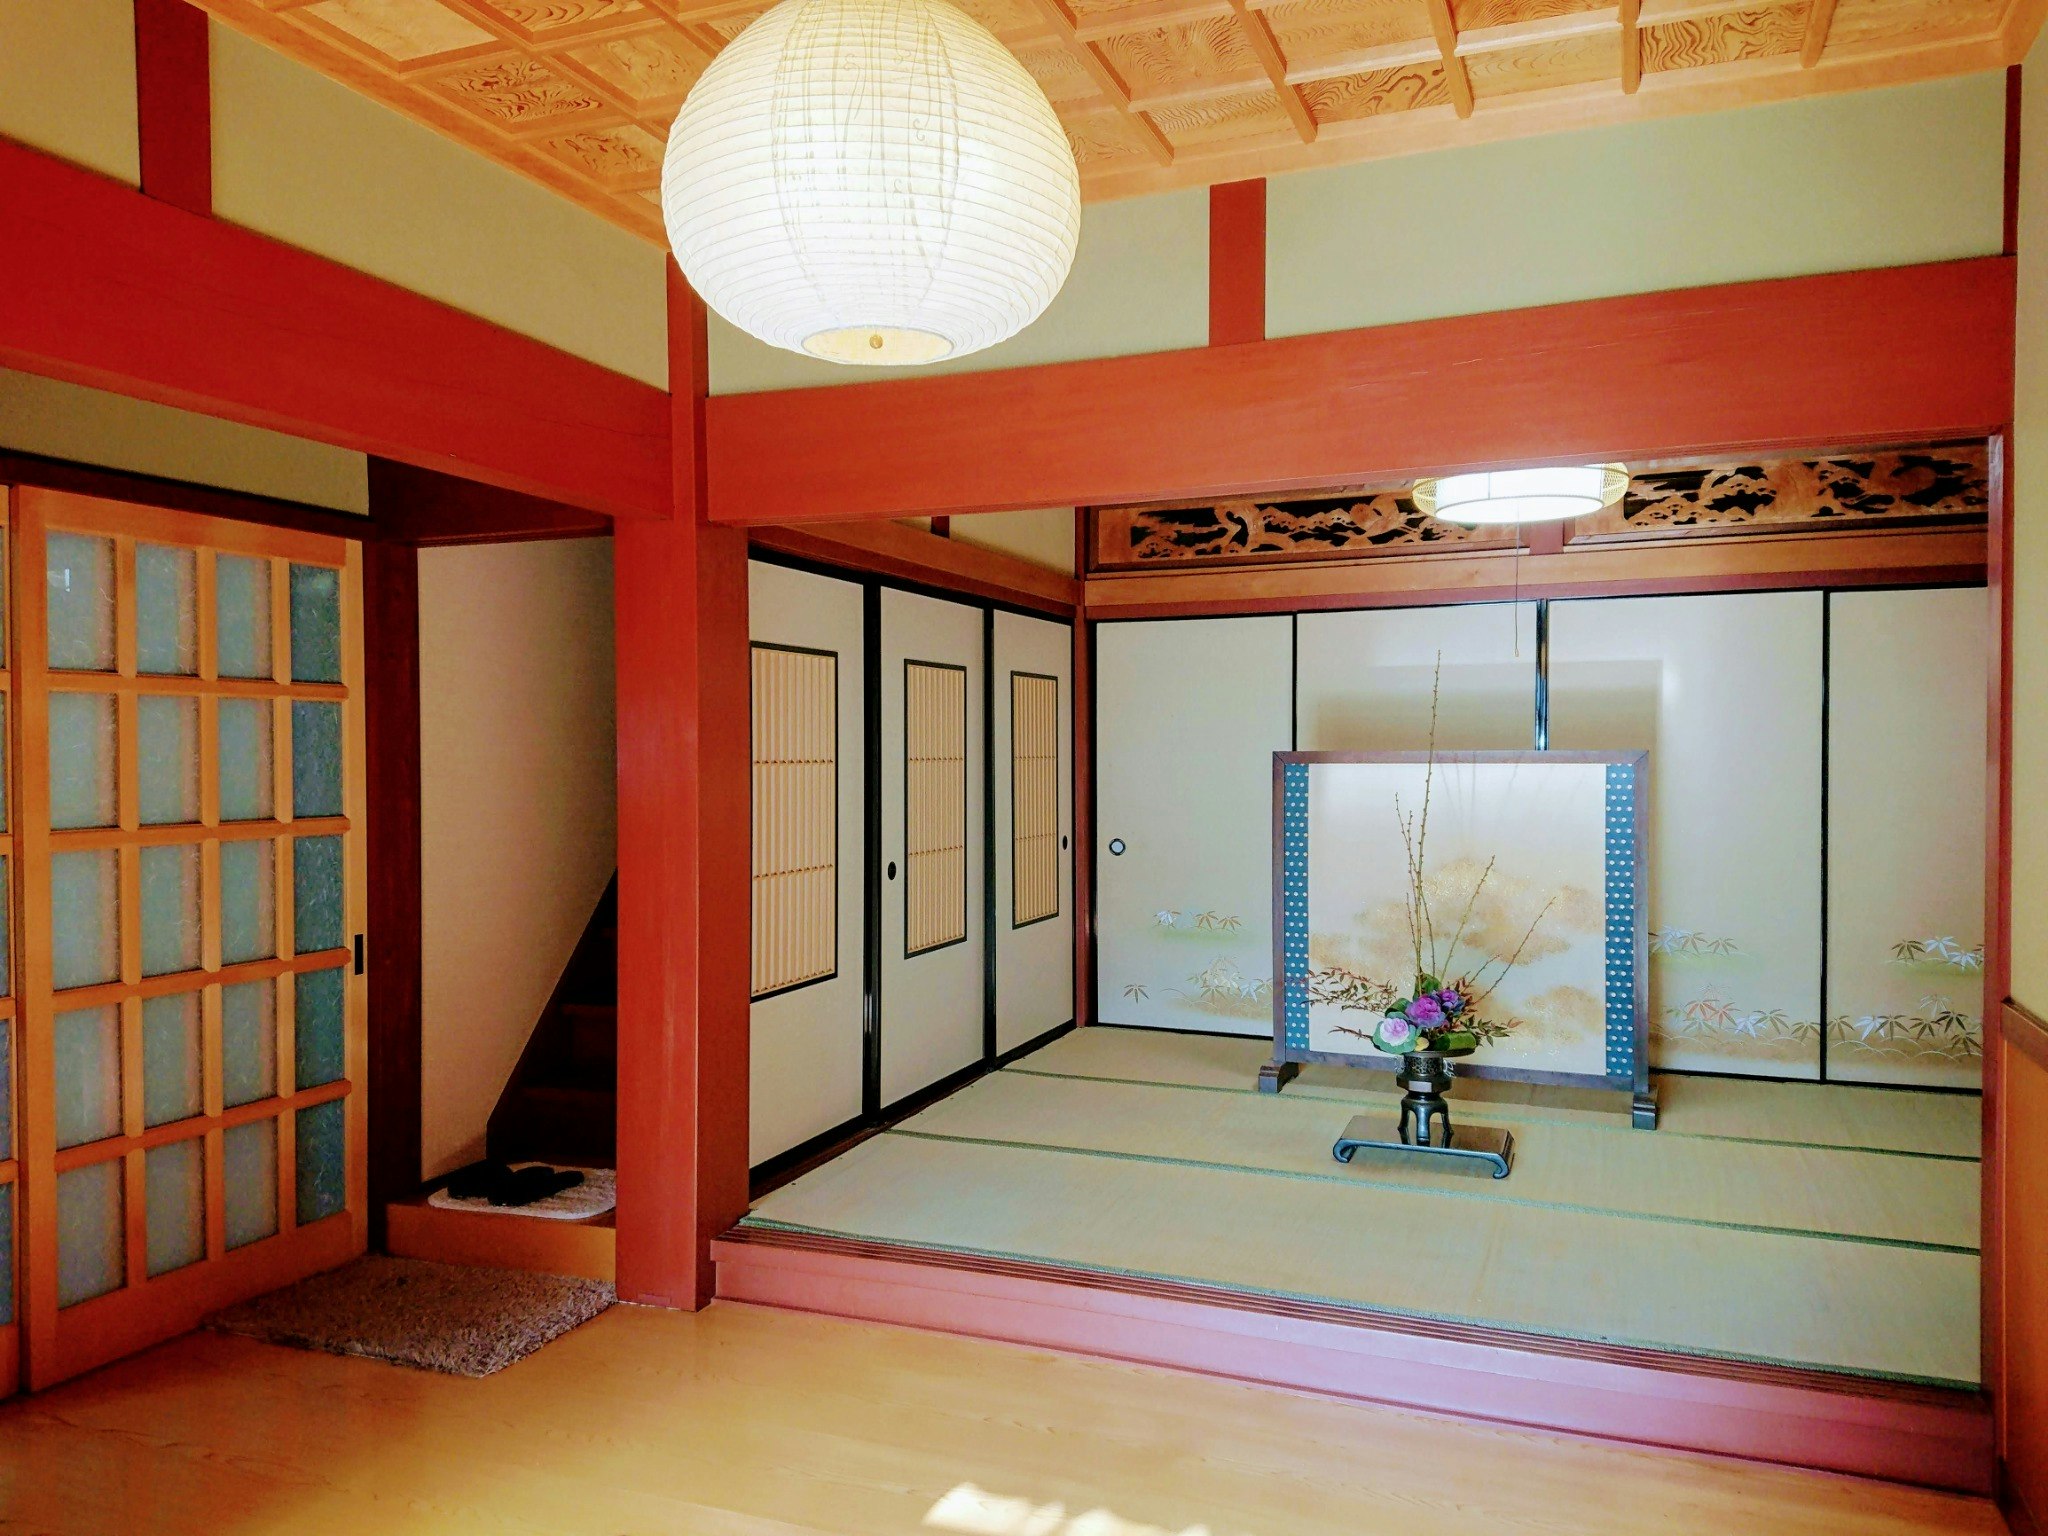 最大10名(3部屋可能) 一組限定 「農家民泊」三左衛門邸-母屋家主居住 伝統日本建築 幼児不可